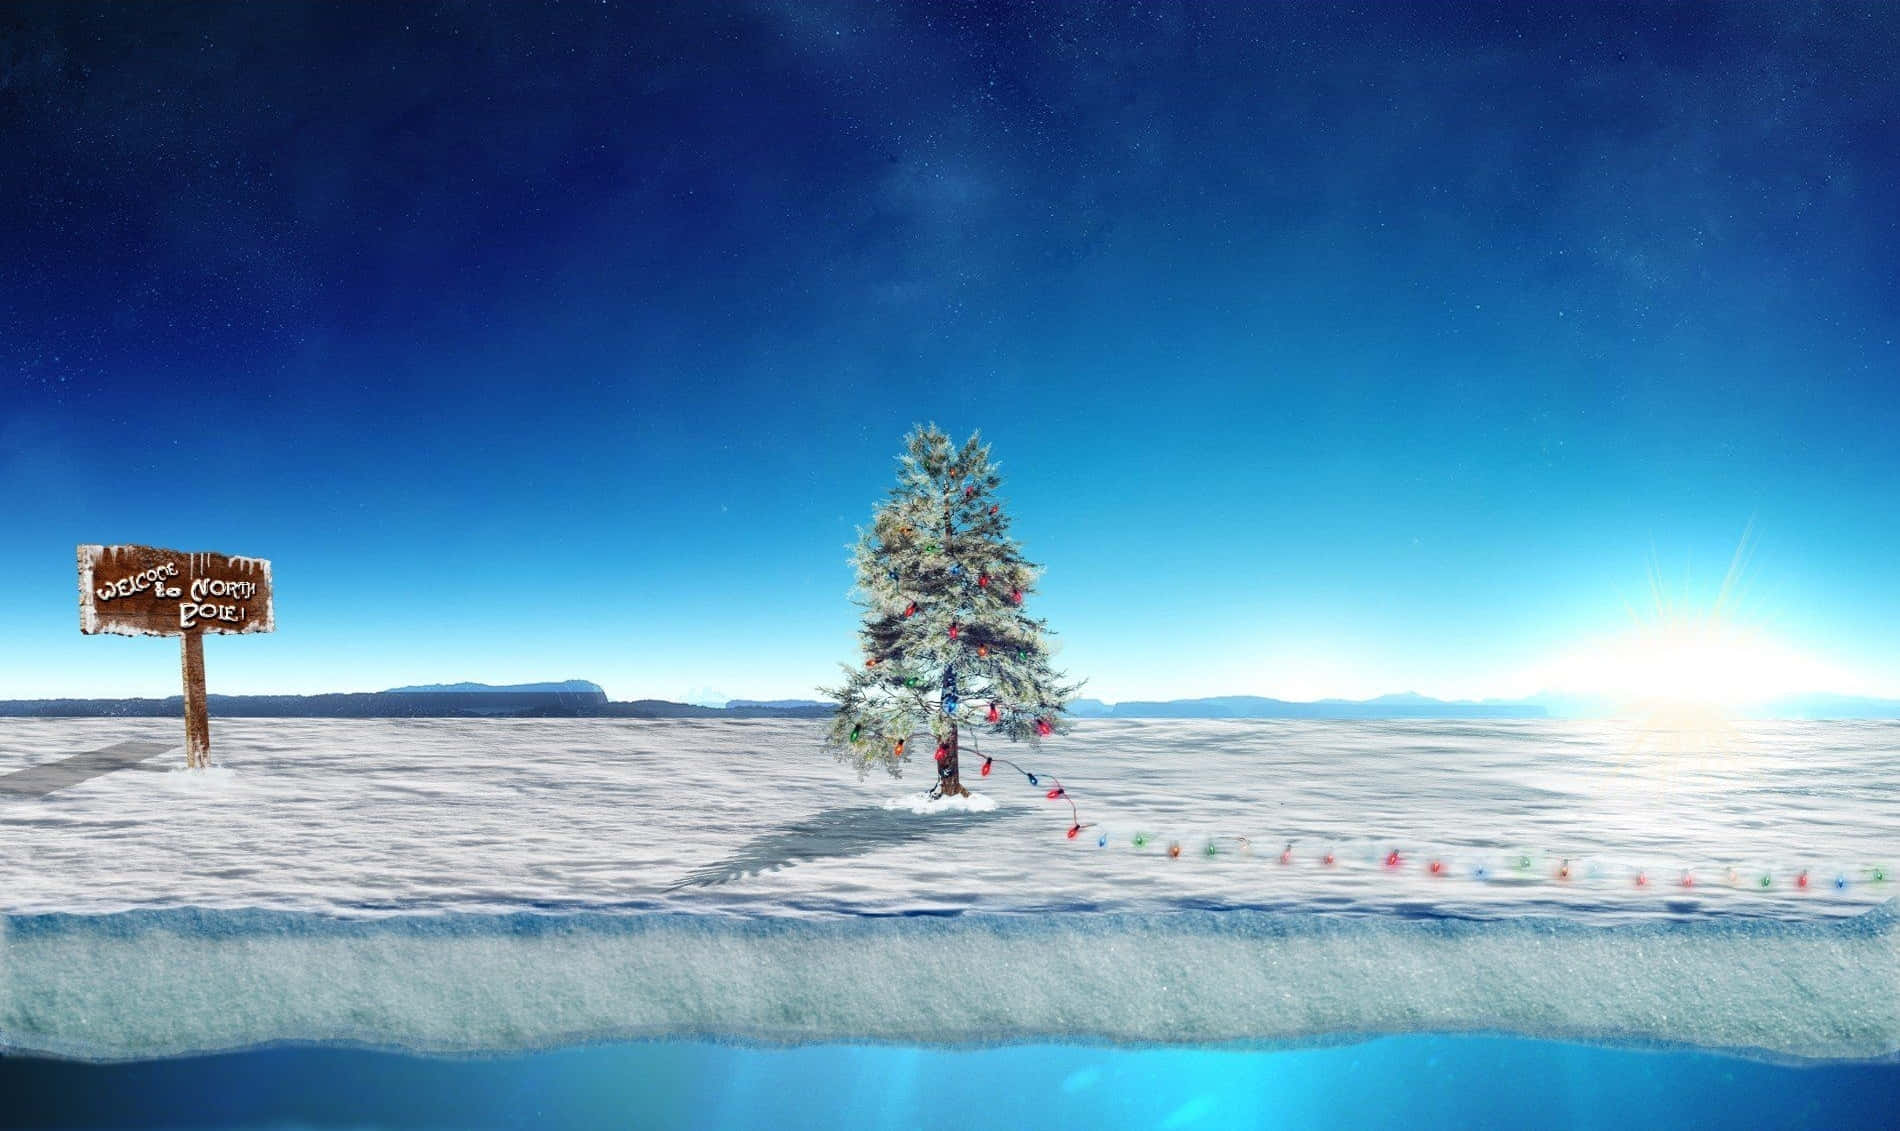 Imagende Un Árbol De Navidad Decorado En El Polo Norte.